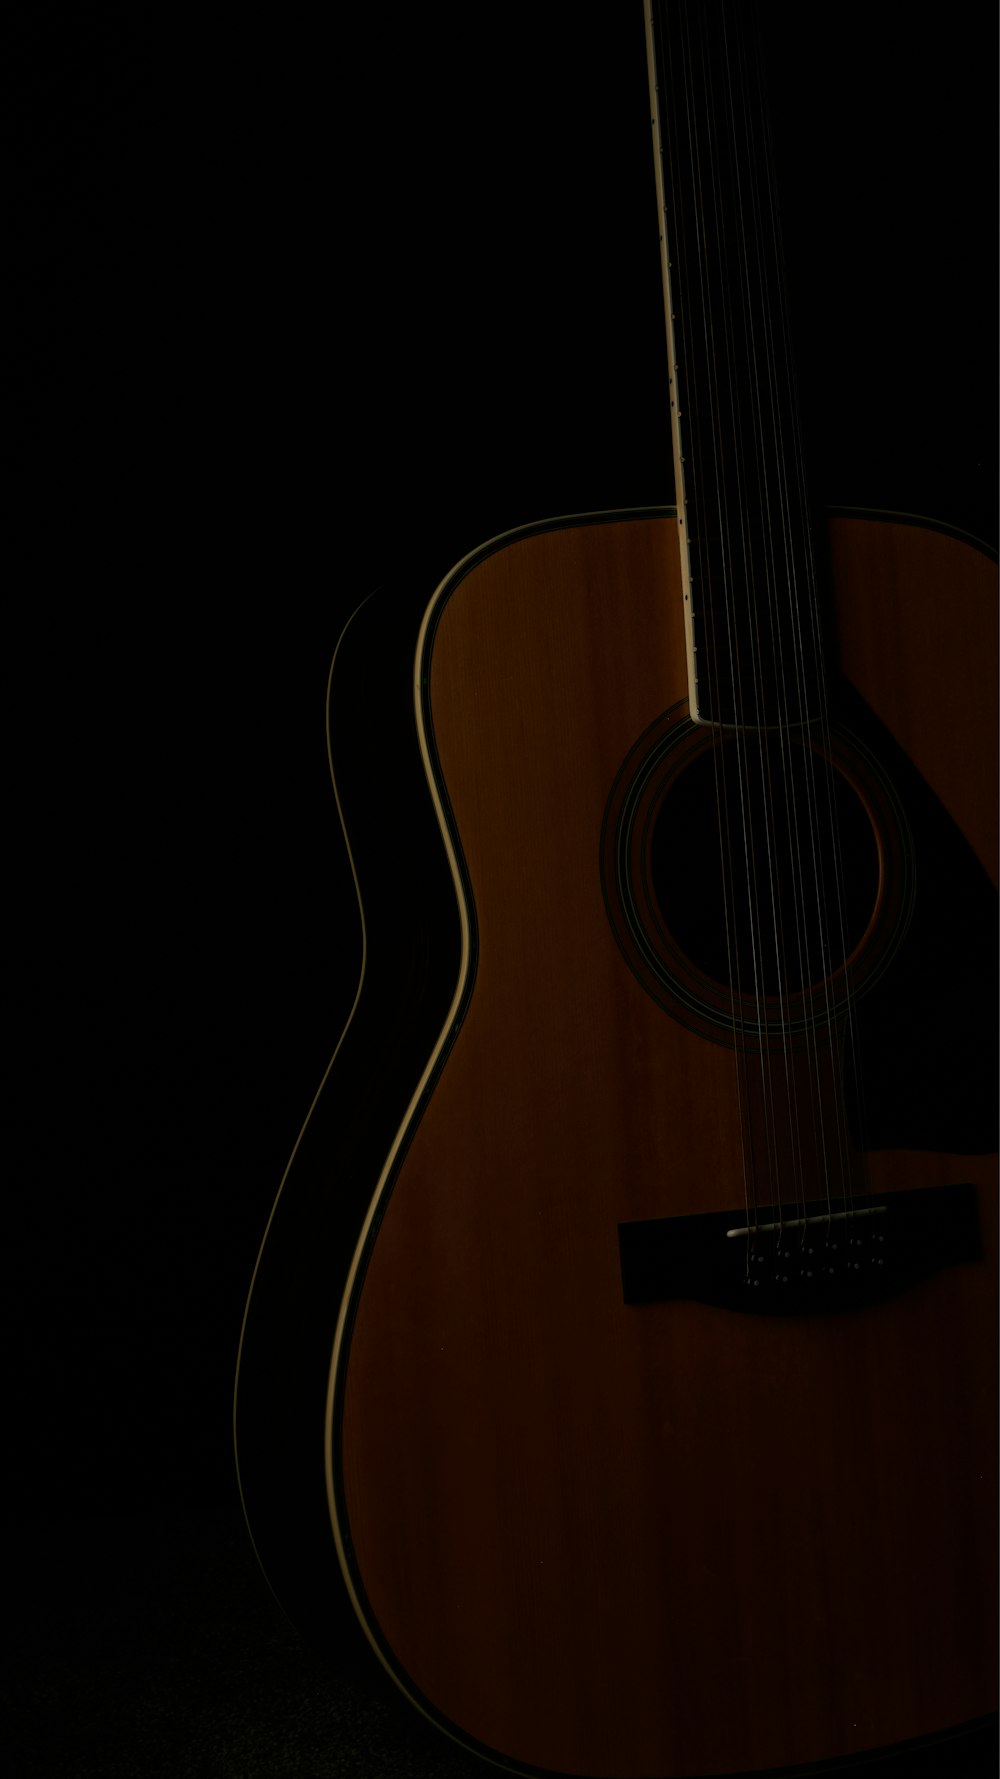 a close up of a guitar in the dark